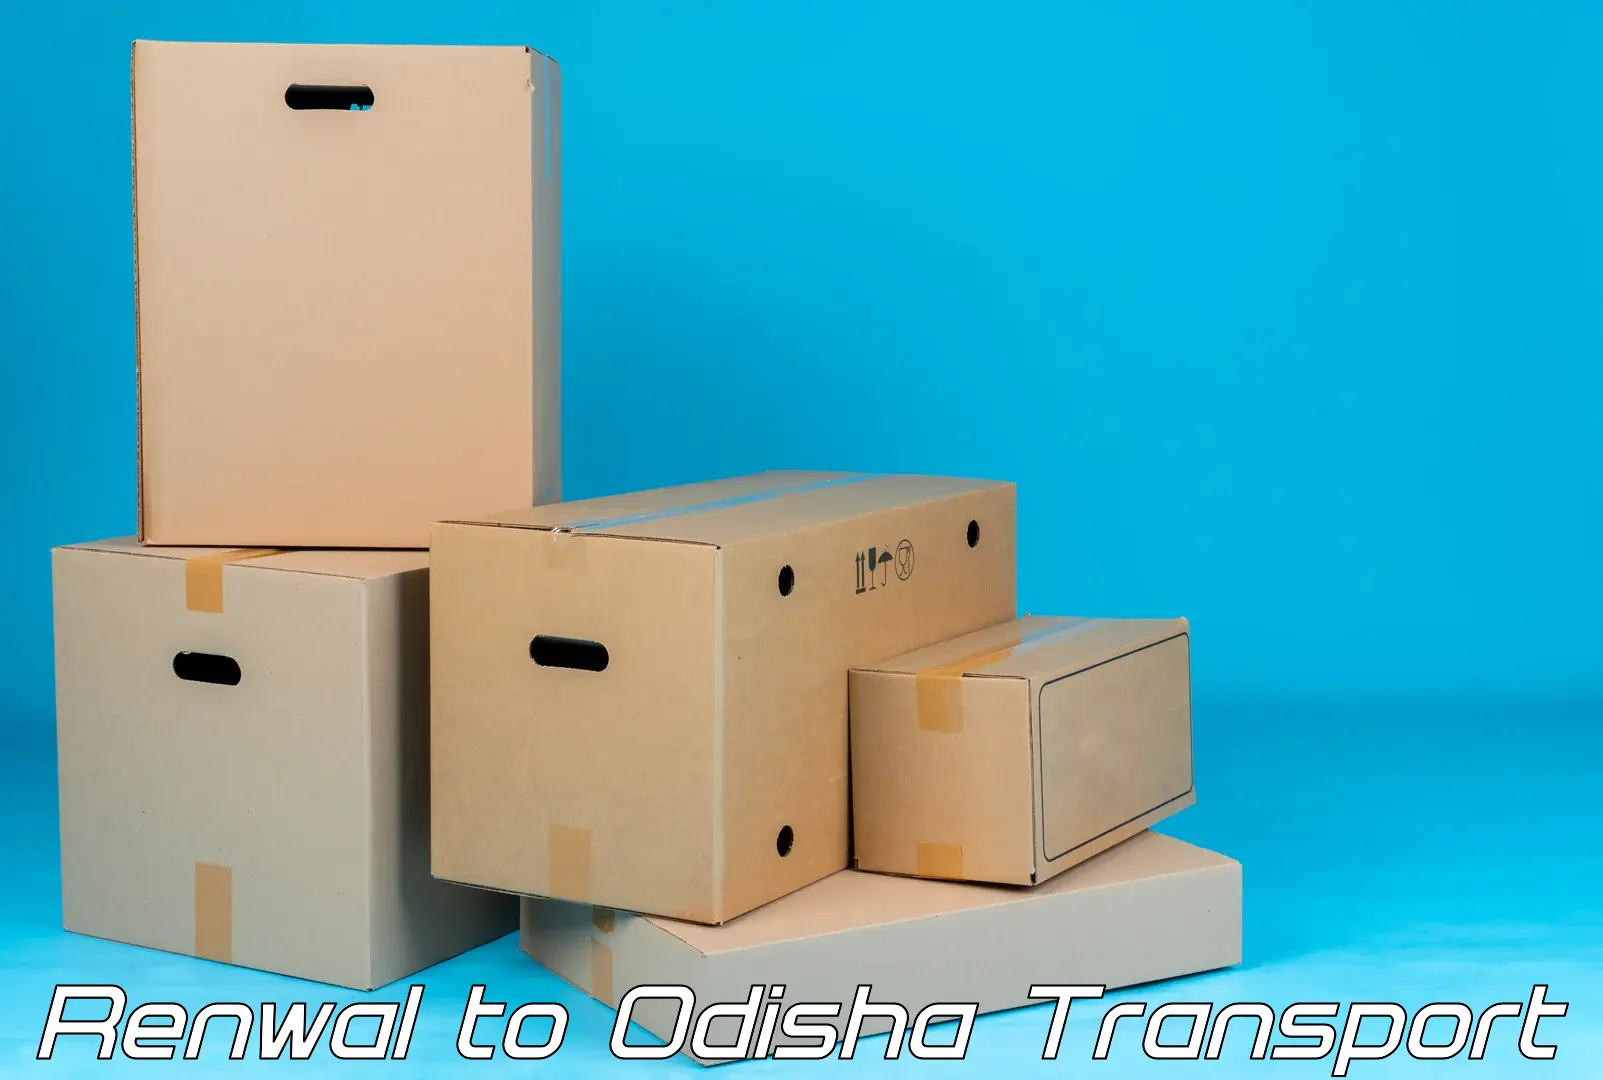 Furniture transport service Renwal to Kotapad